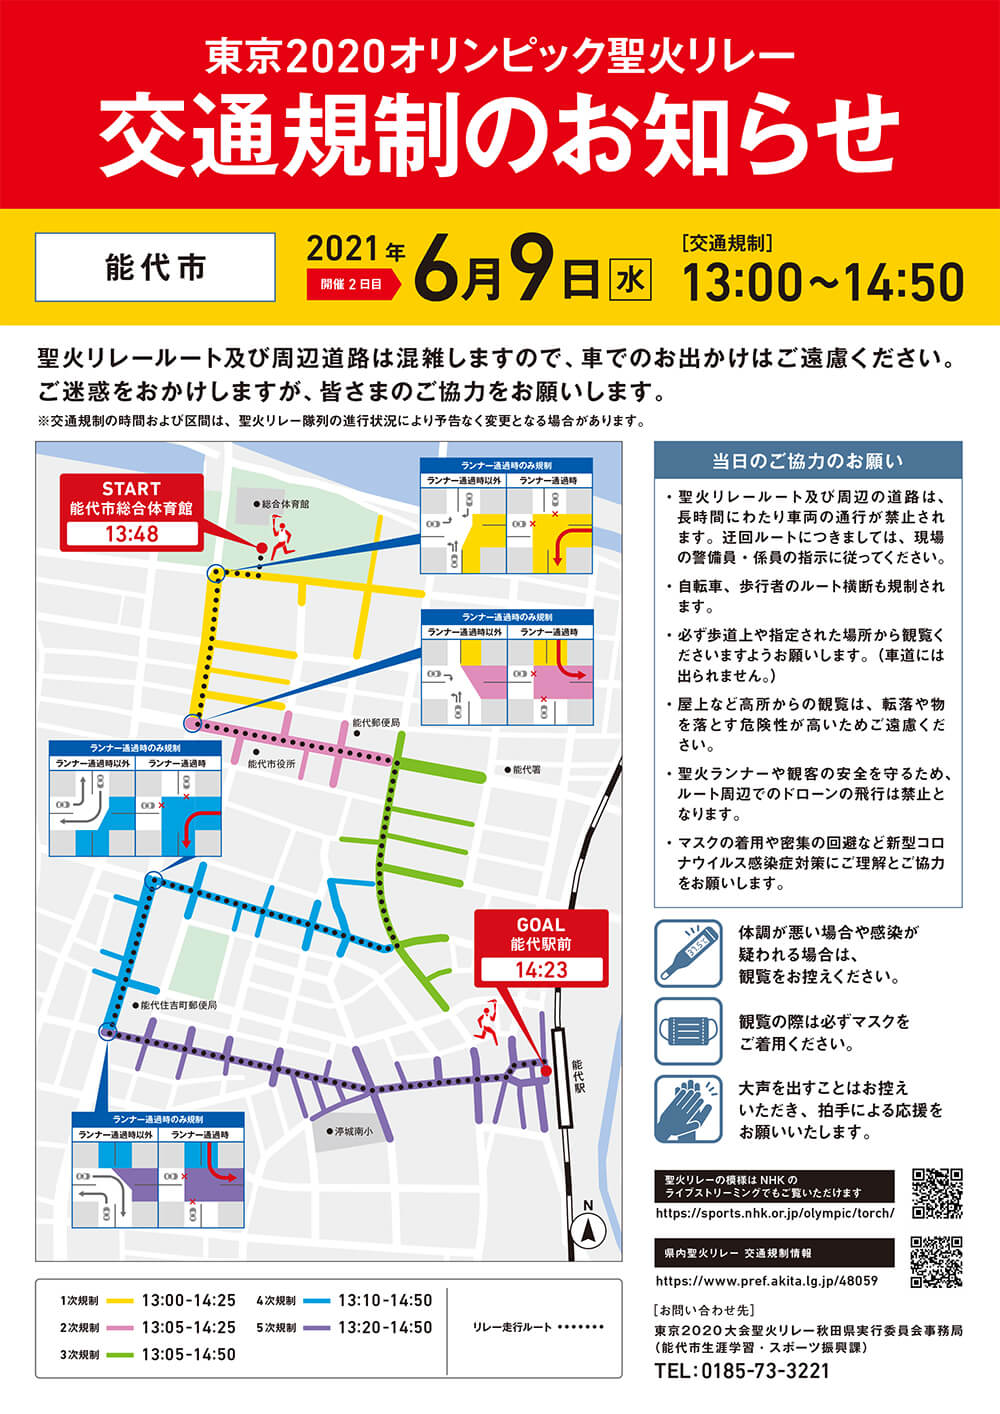 東京2020オリンピック聖火リレーの開催に伴う交通規制のお知らせ